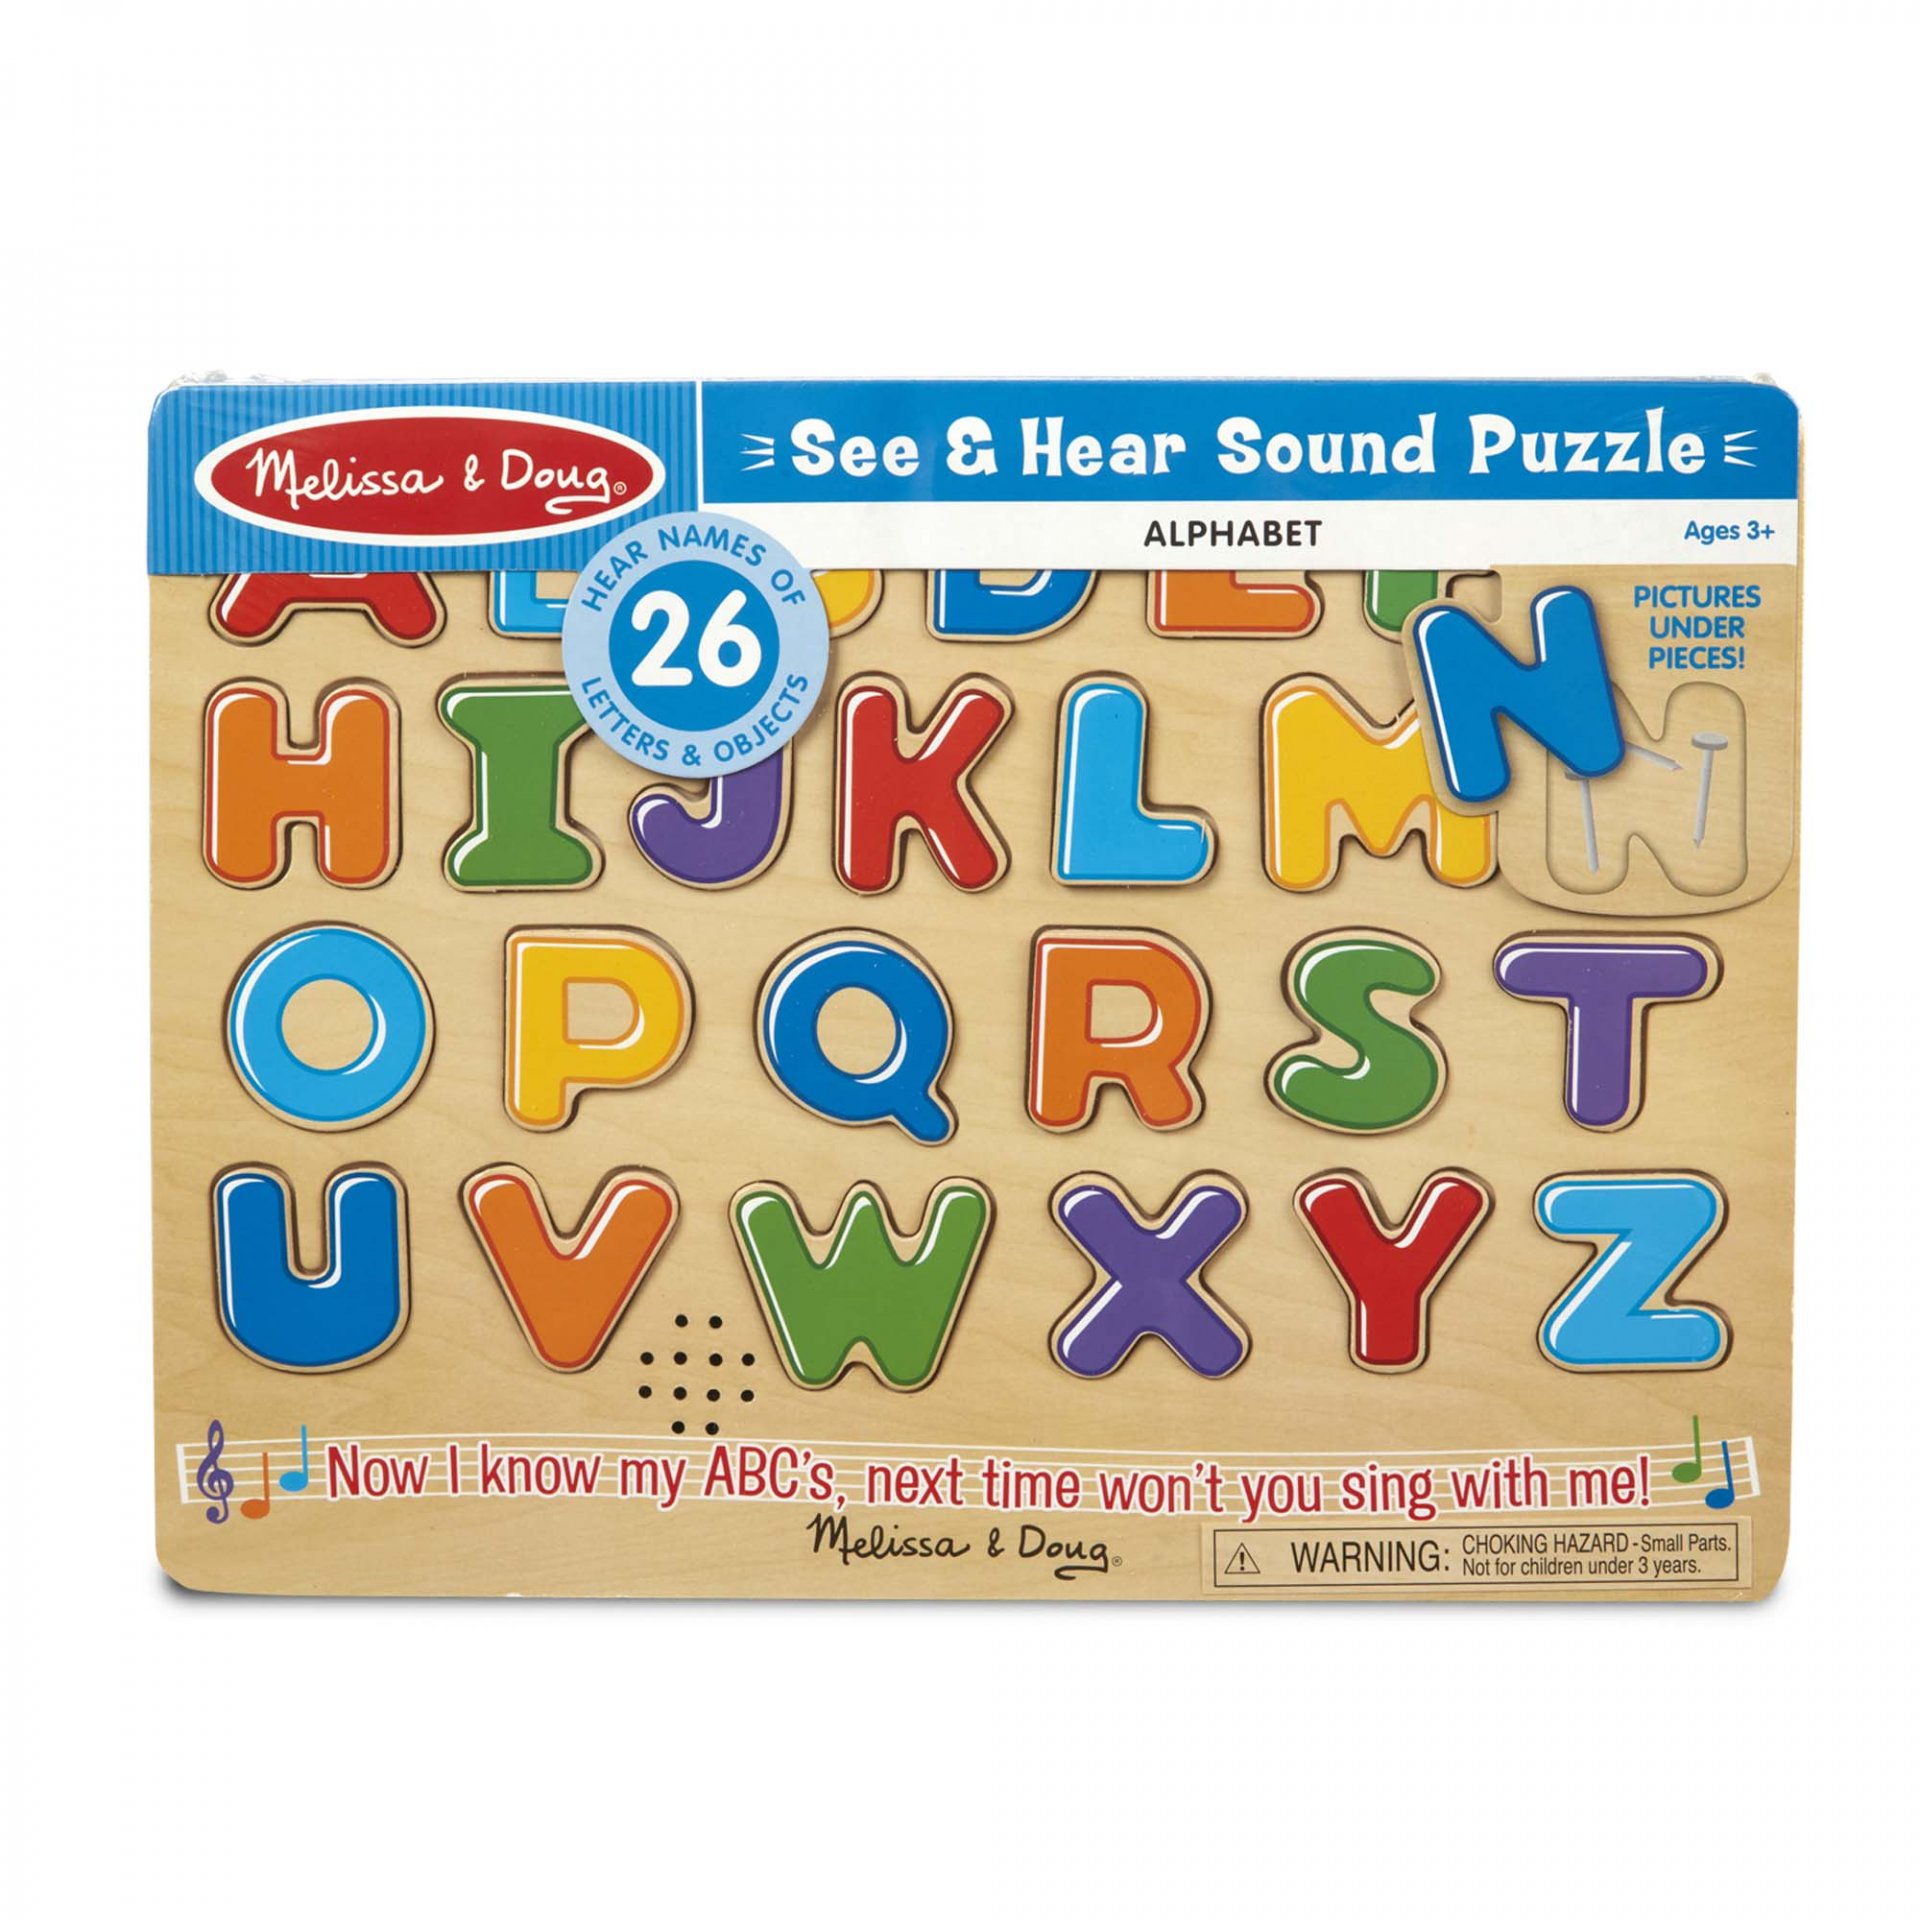 พัซเซิลมีเสียง เรียนรู้ ตัวอักษร Sound Puzzle Alphabet รุ่น 340 ยี่ห้อ Melissa & Doug (นำเข้า USA)